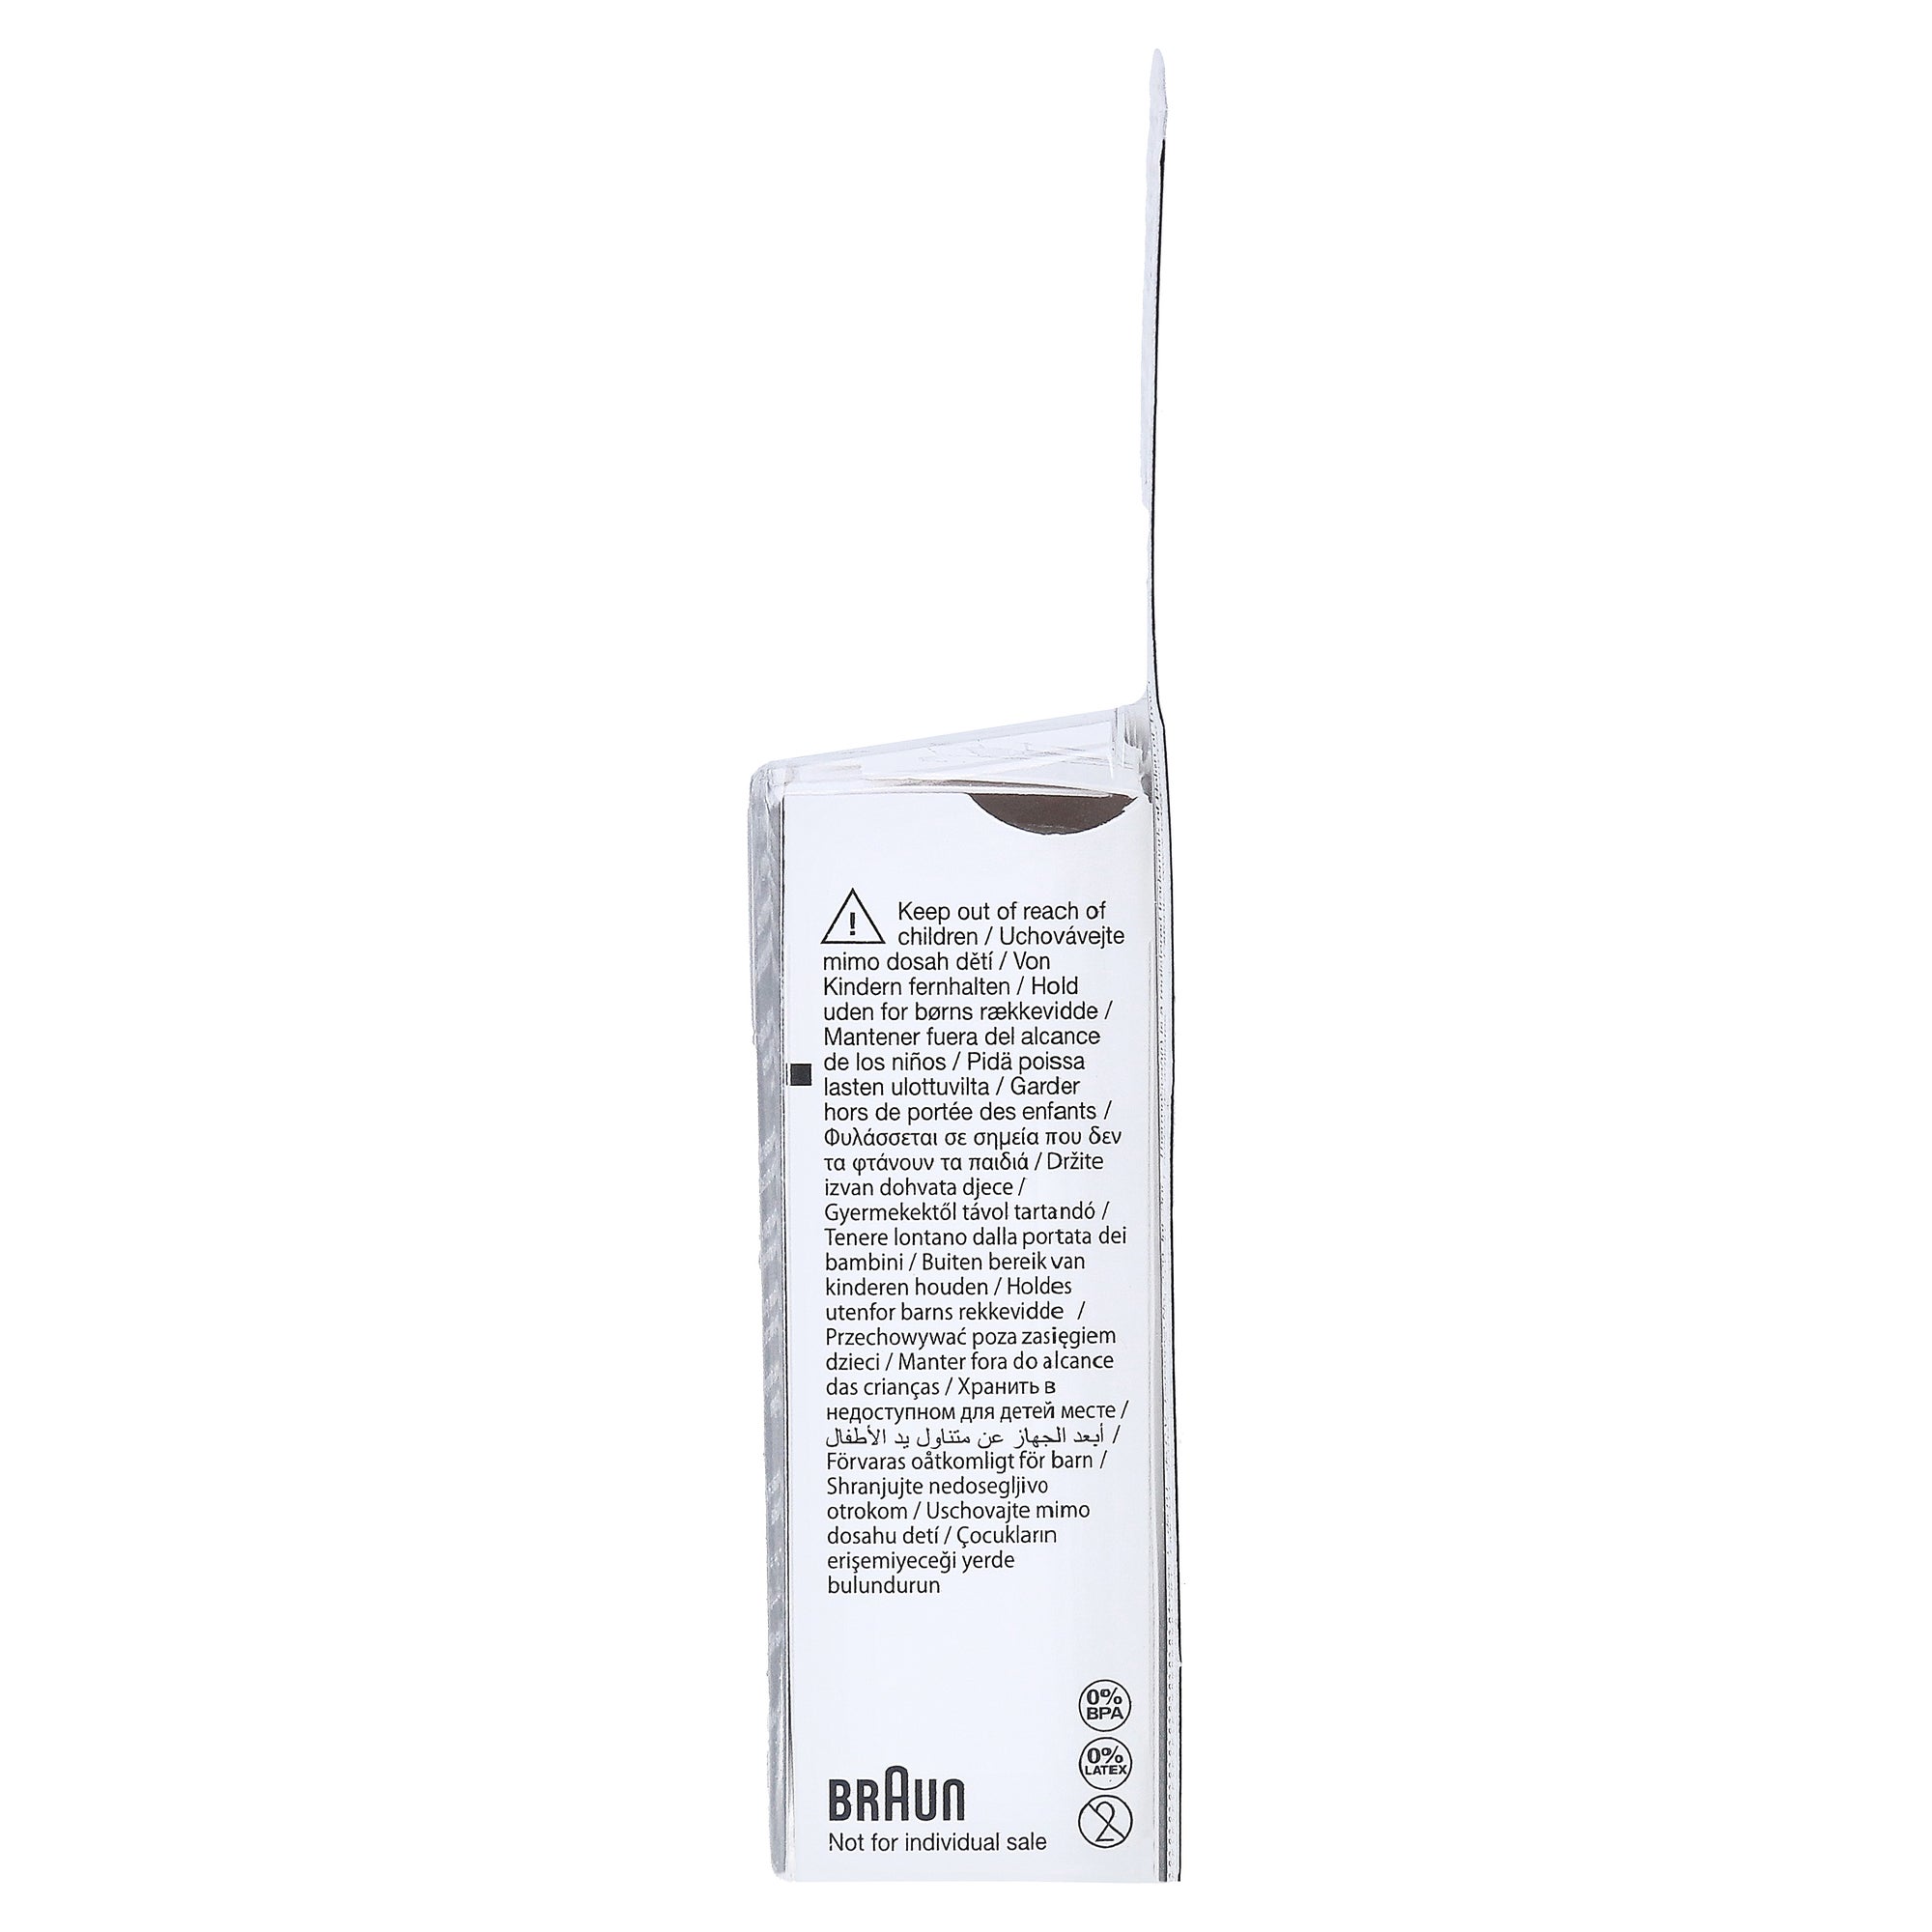 BRAUN Hygiene Caps Schutzkappen für ThermoScan 7 und ThermoScan 3, 40 St.  online kaufen